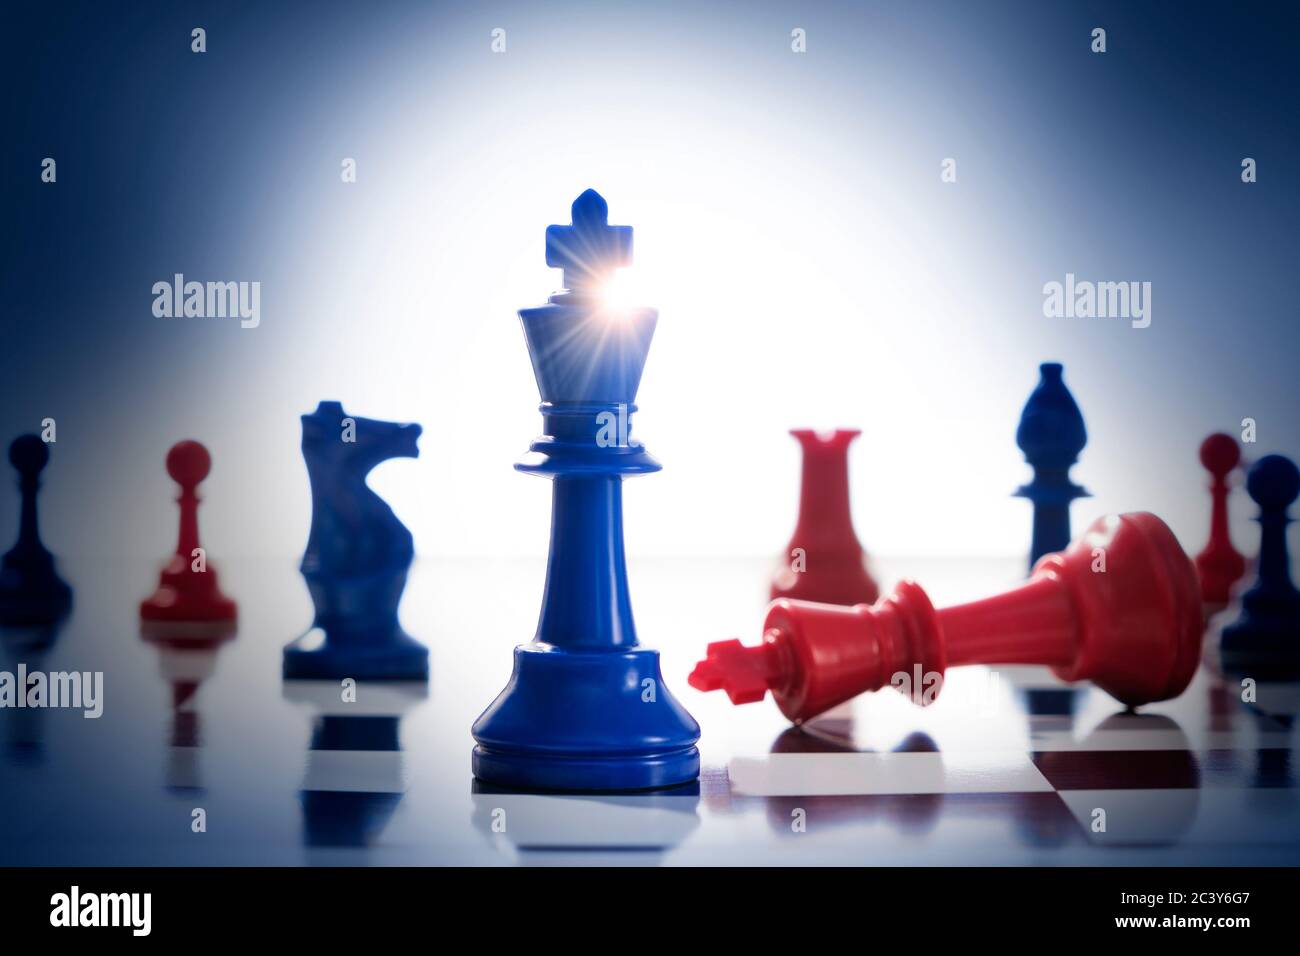 Studioaufnahme von roten und blauen Schachfiguren, die uns symbolisieren Demokratische und republikanische Parteien Stockfoto